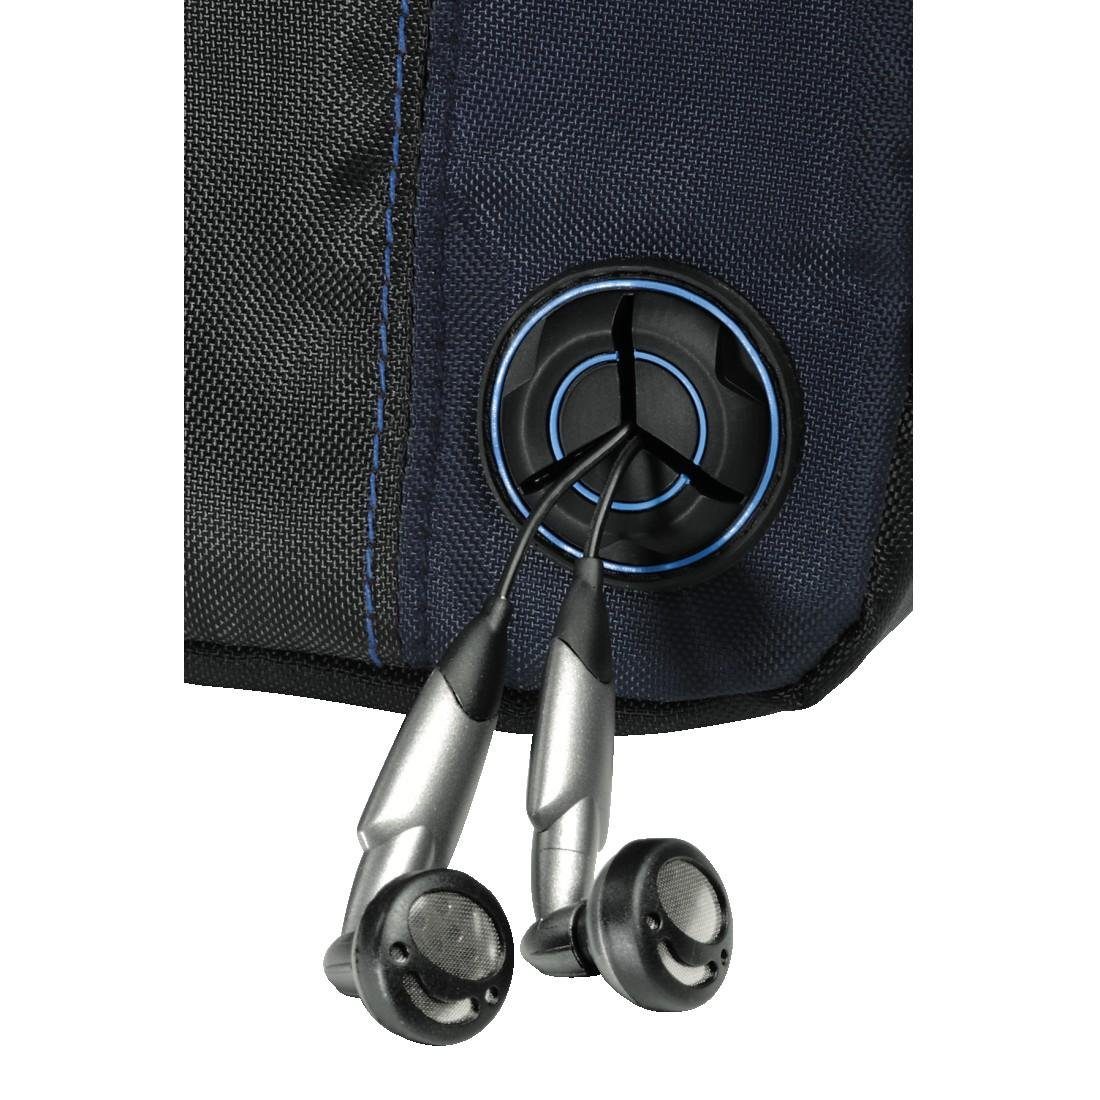 Hama CD-Player Tasche Tasche für Discman und 3 CDs, Schwarz Blau,  Trageriemen, Kabelausgang